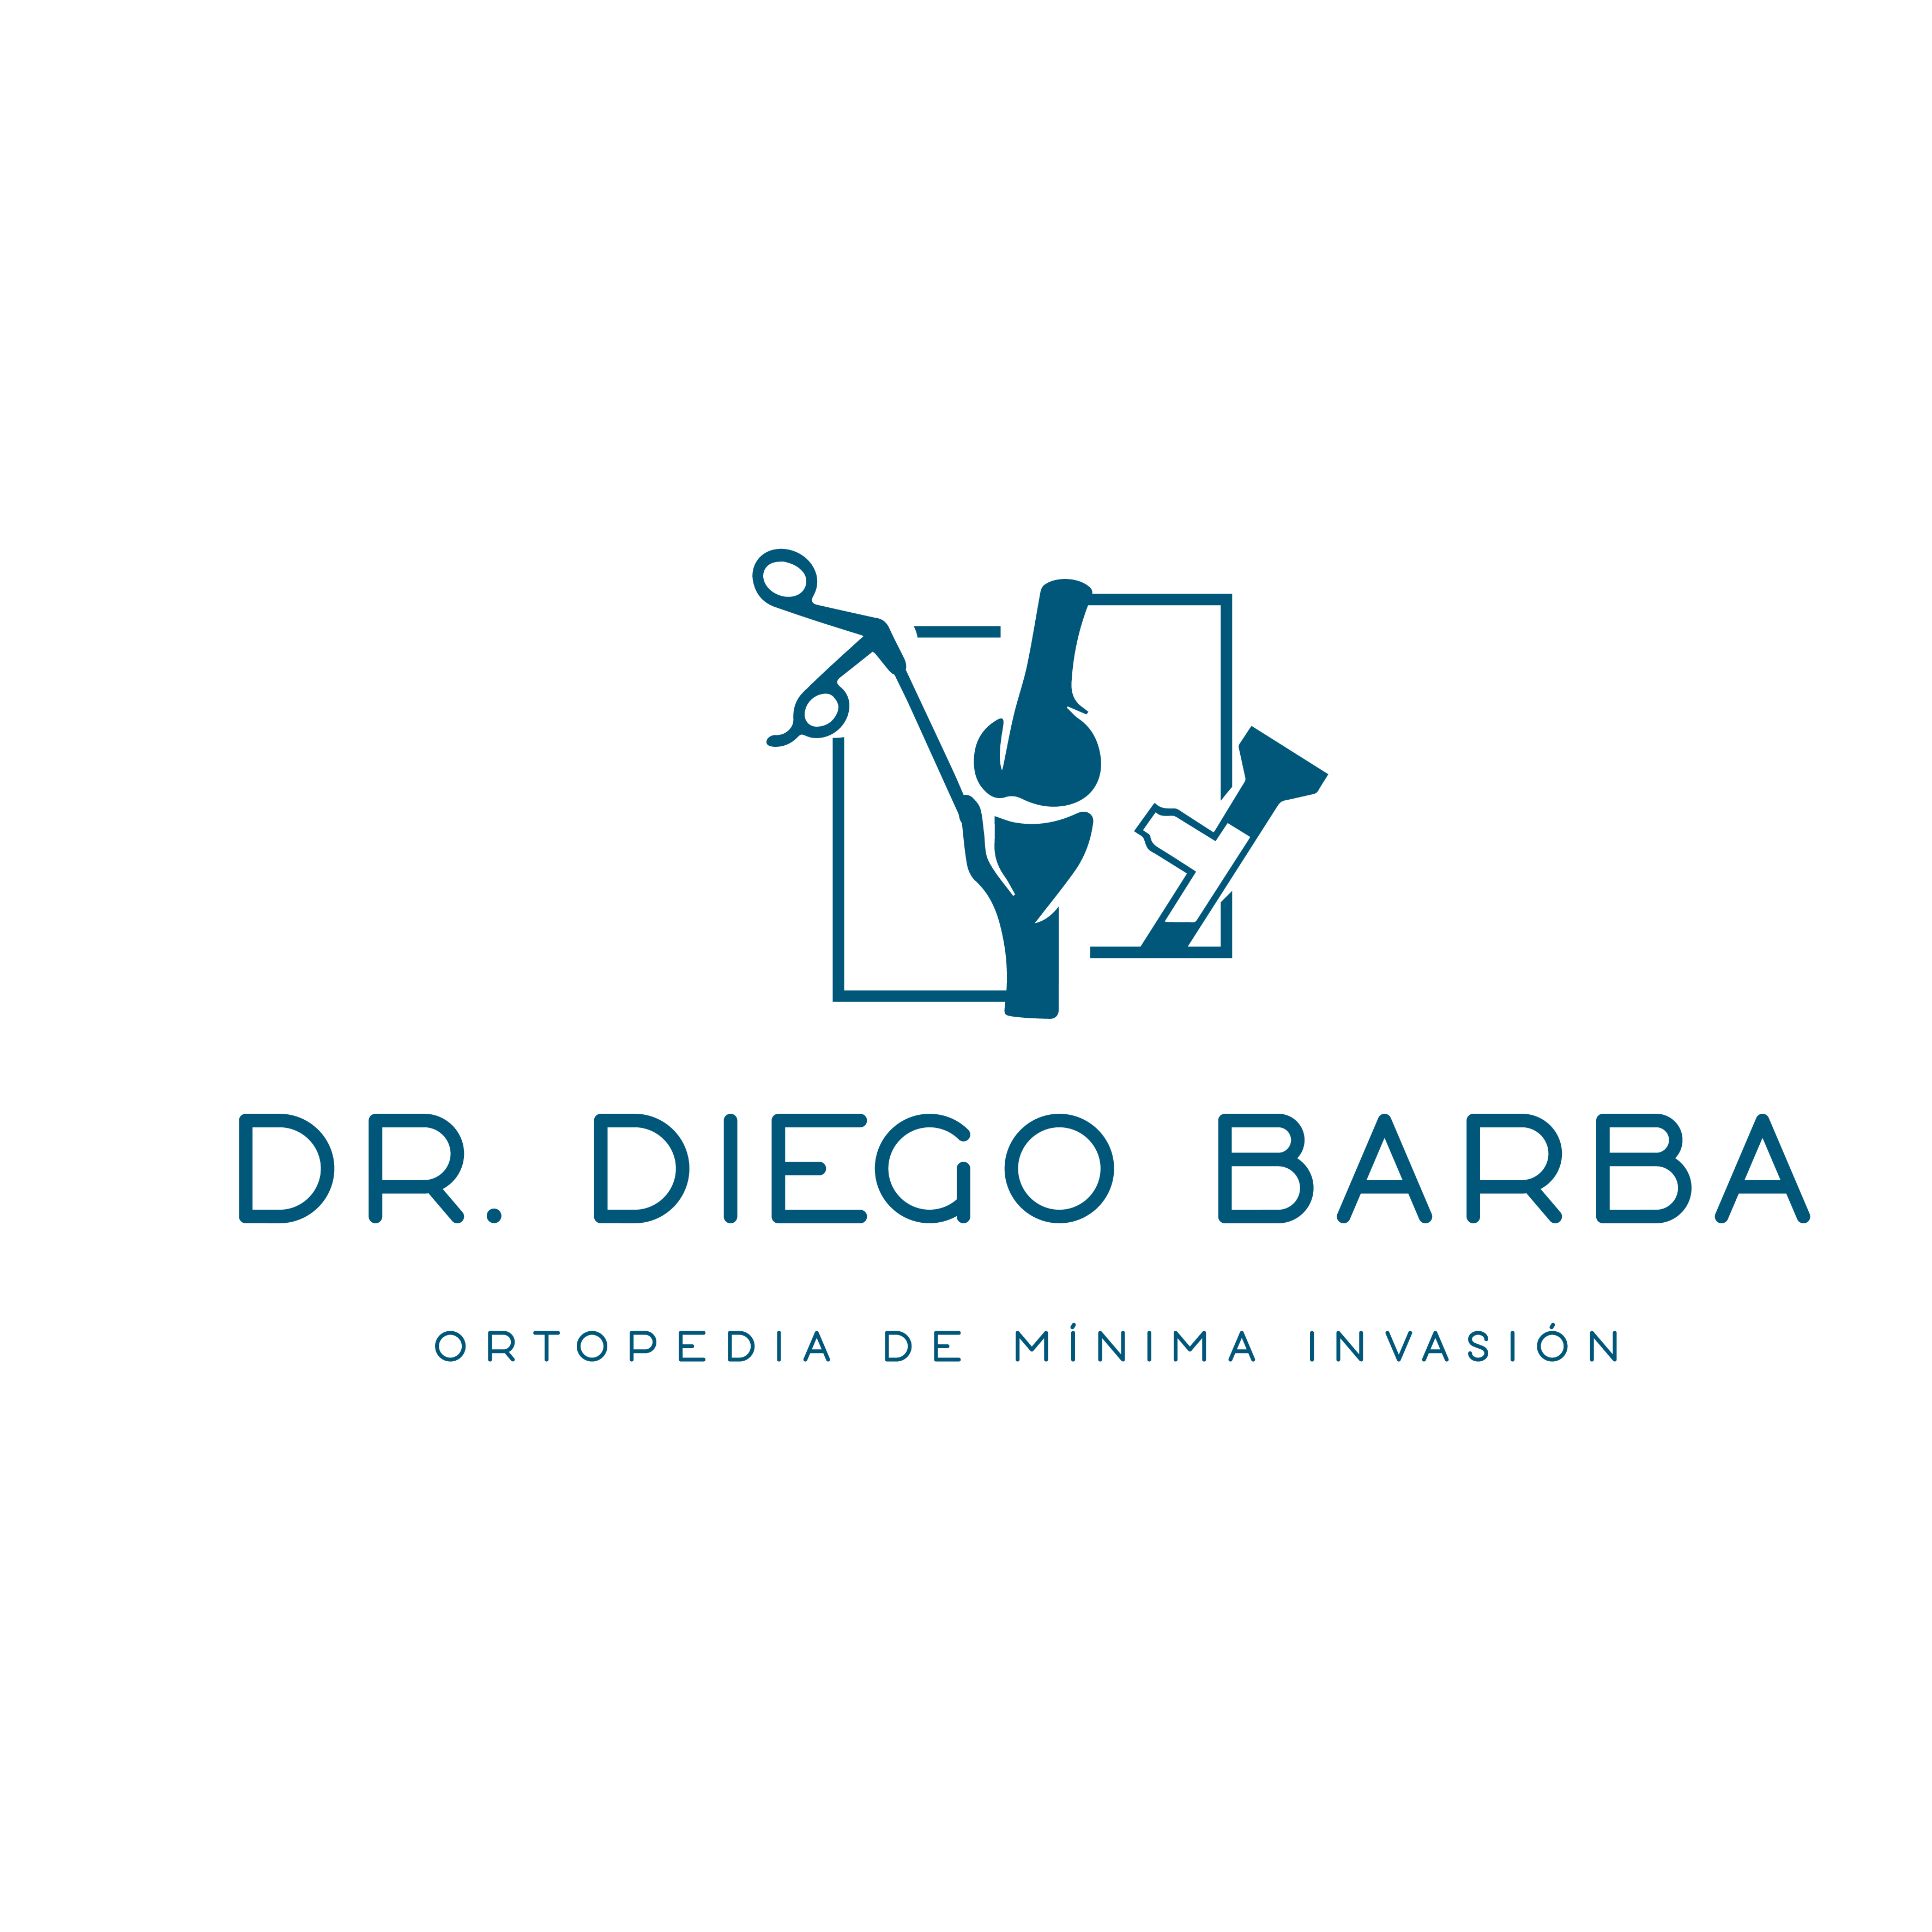 Dr. Diego Barba